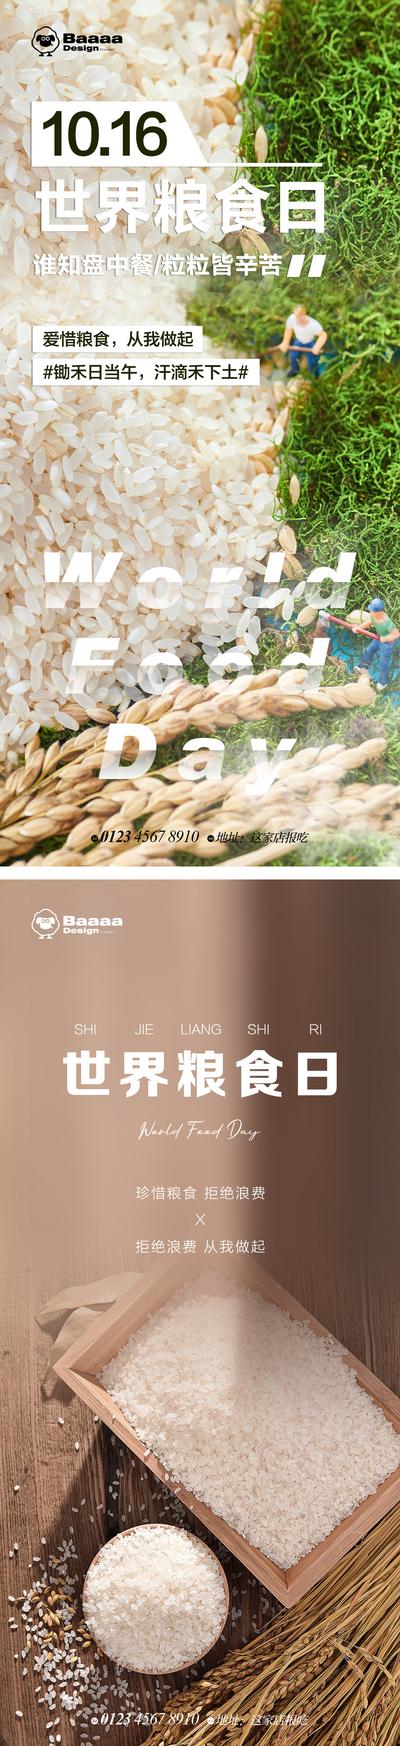 南门网 海报 公历节日 世界粮食日 粮食 稻谷 食物 大米